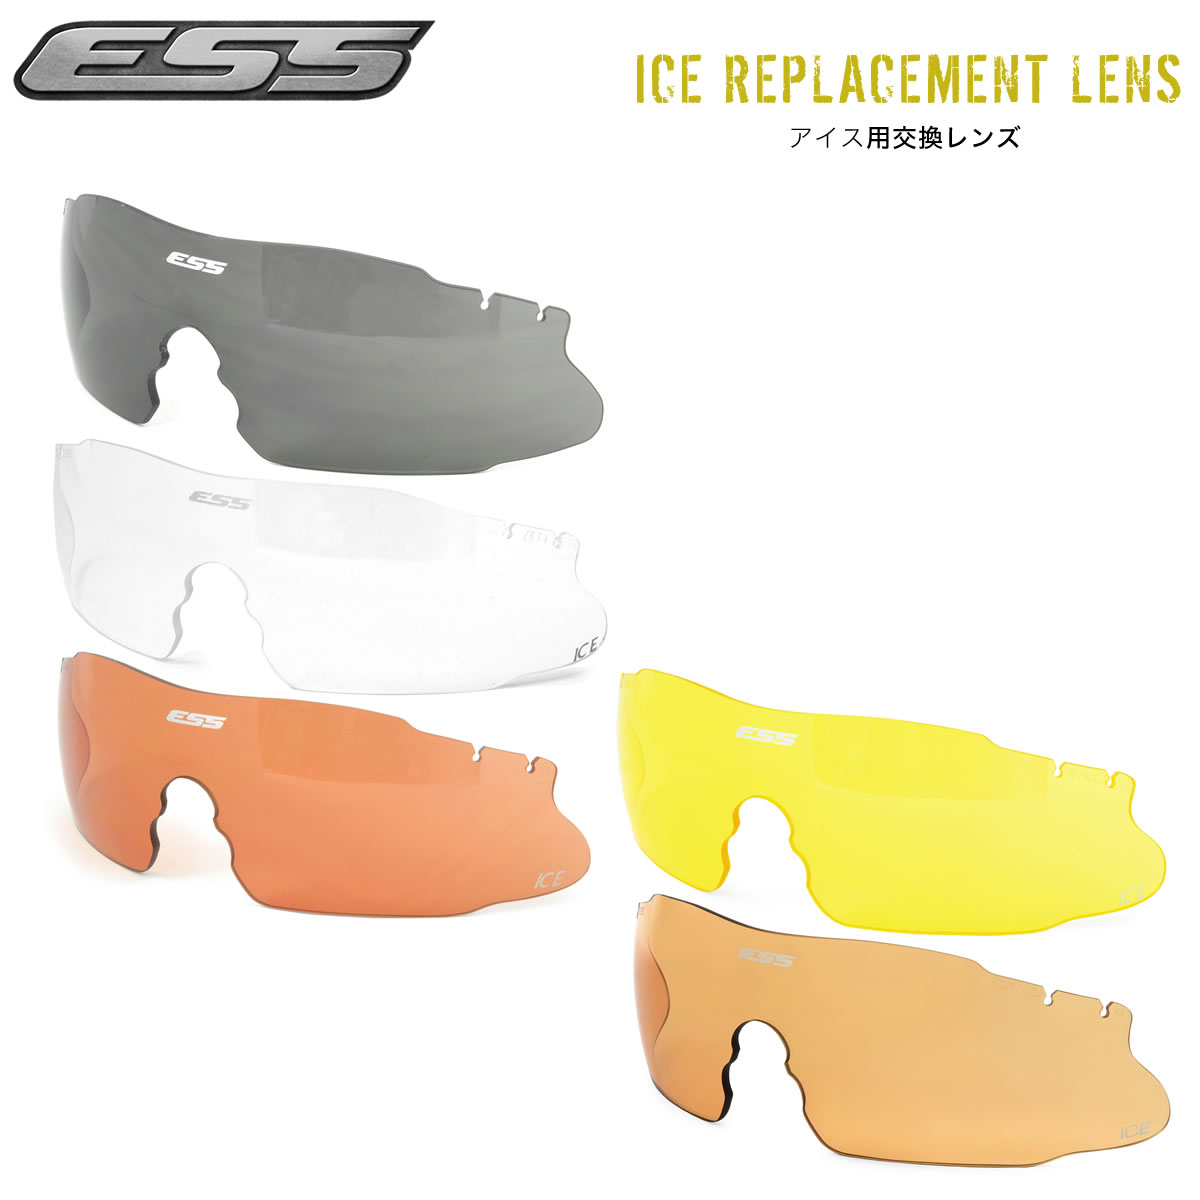 ESS ICE スペアレンズ サングラス 交換用レンズ アイス REPLACEMENT LENS 全5色 防弾 サバゲー 